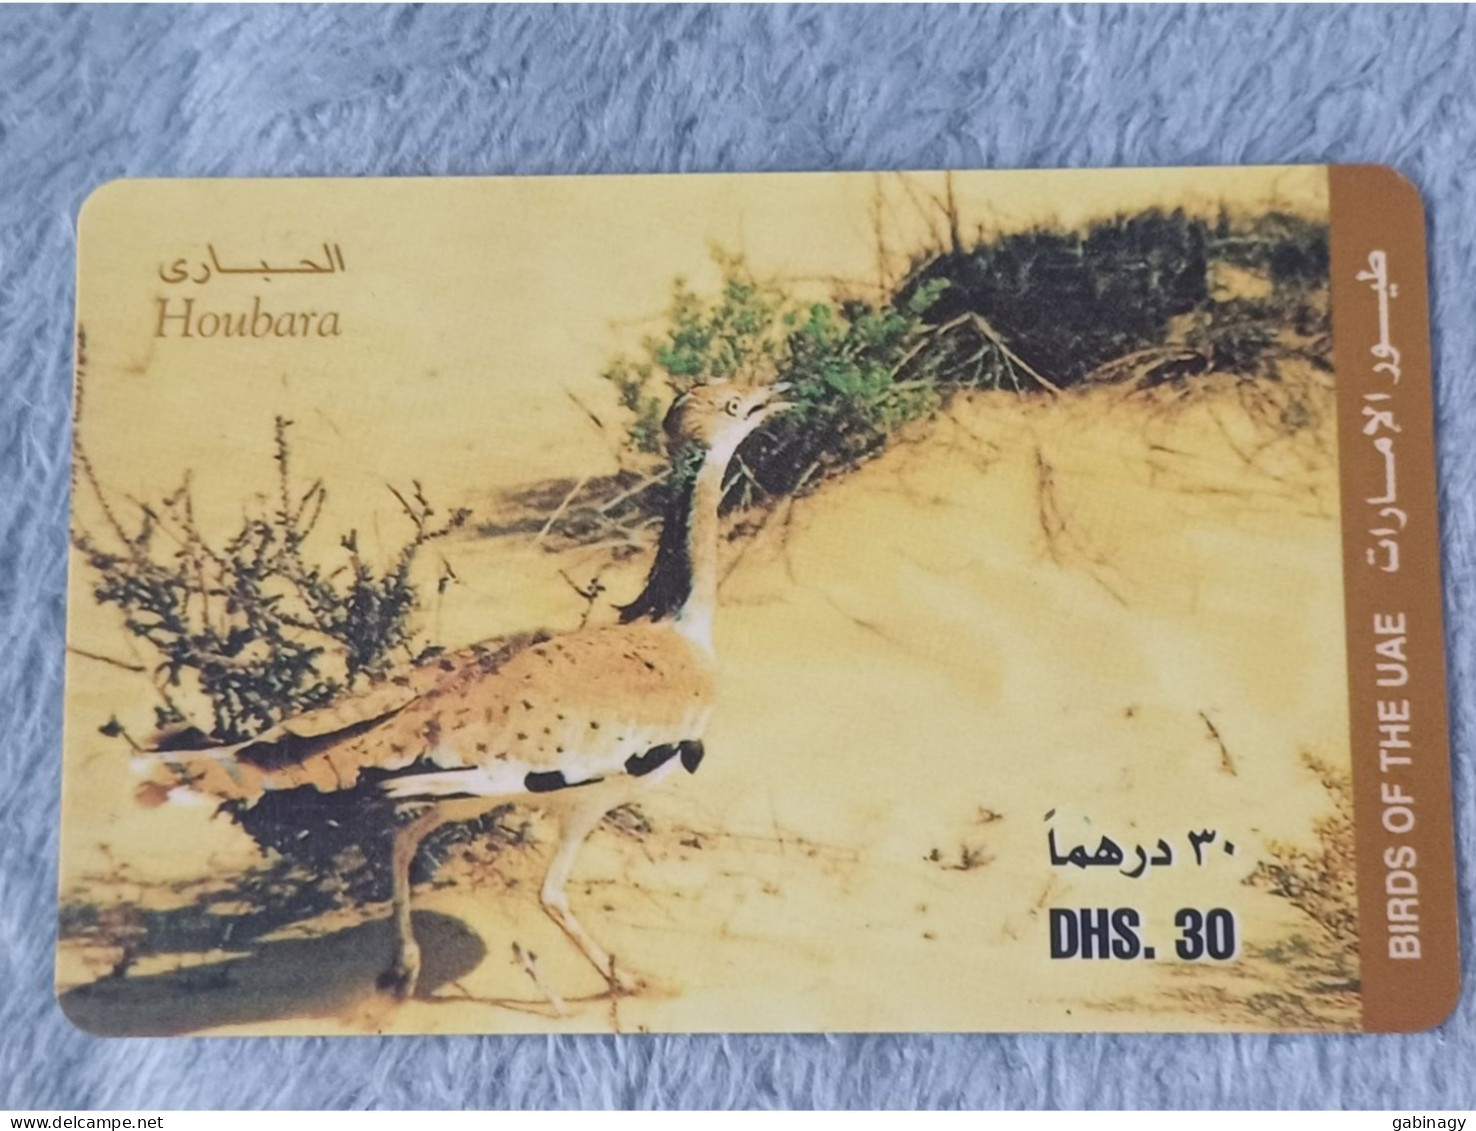 UAE - 2 CARDS OF BIRDS - United Arab Emirates